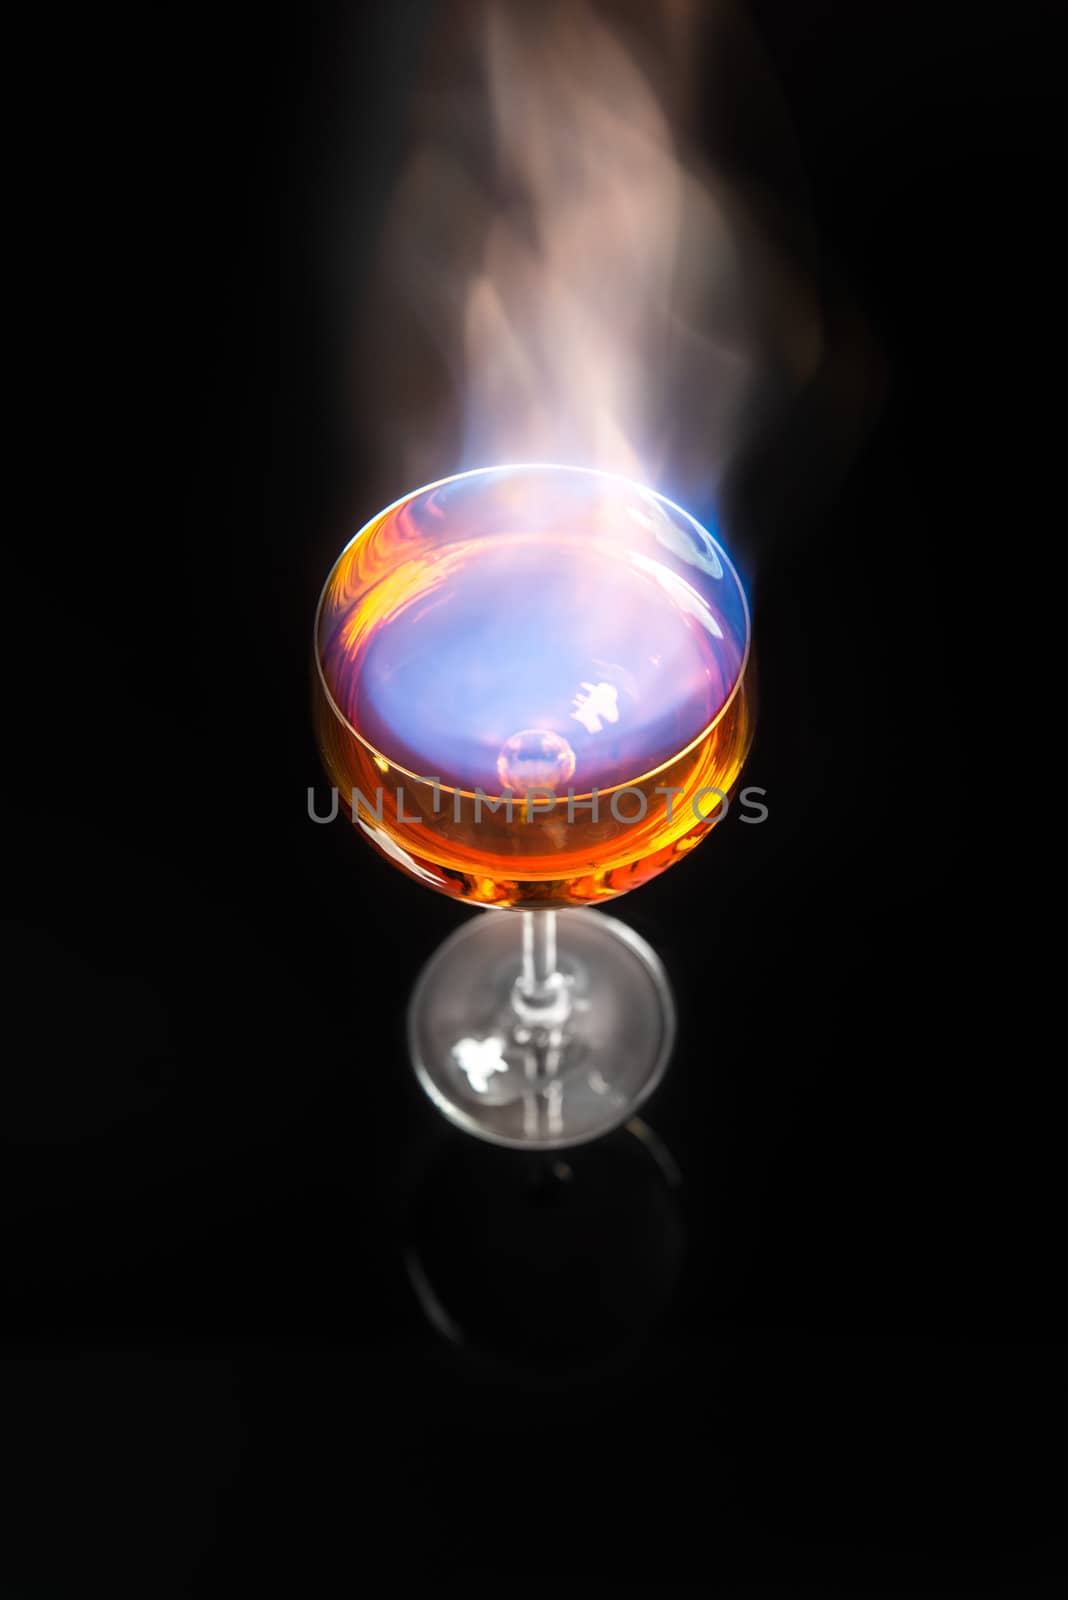 Burning alcohol by jjgerber